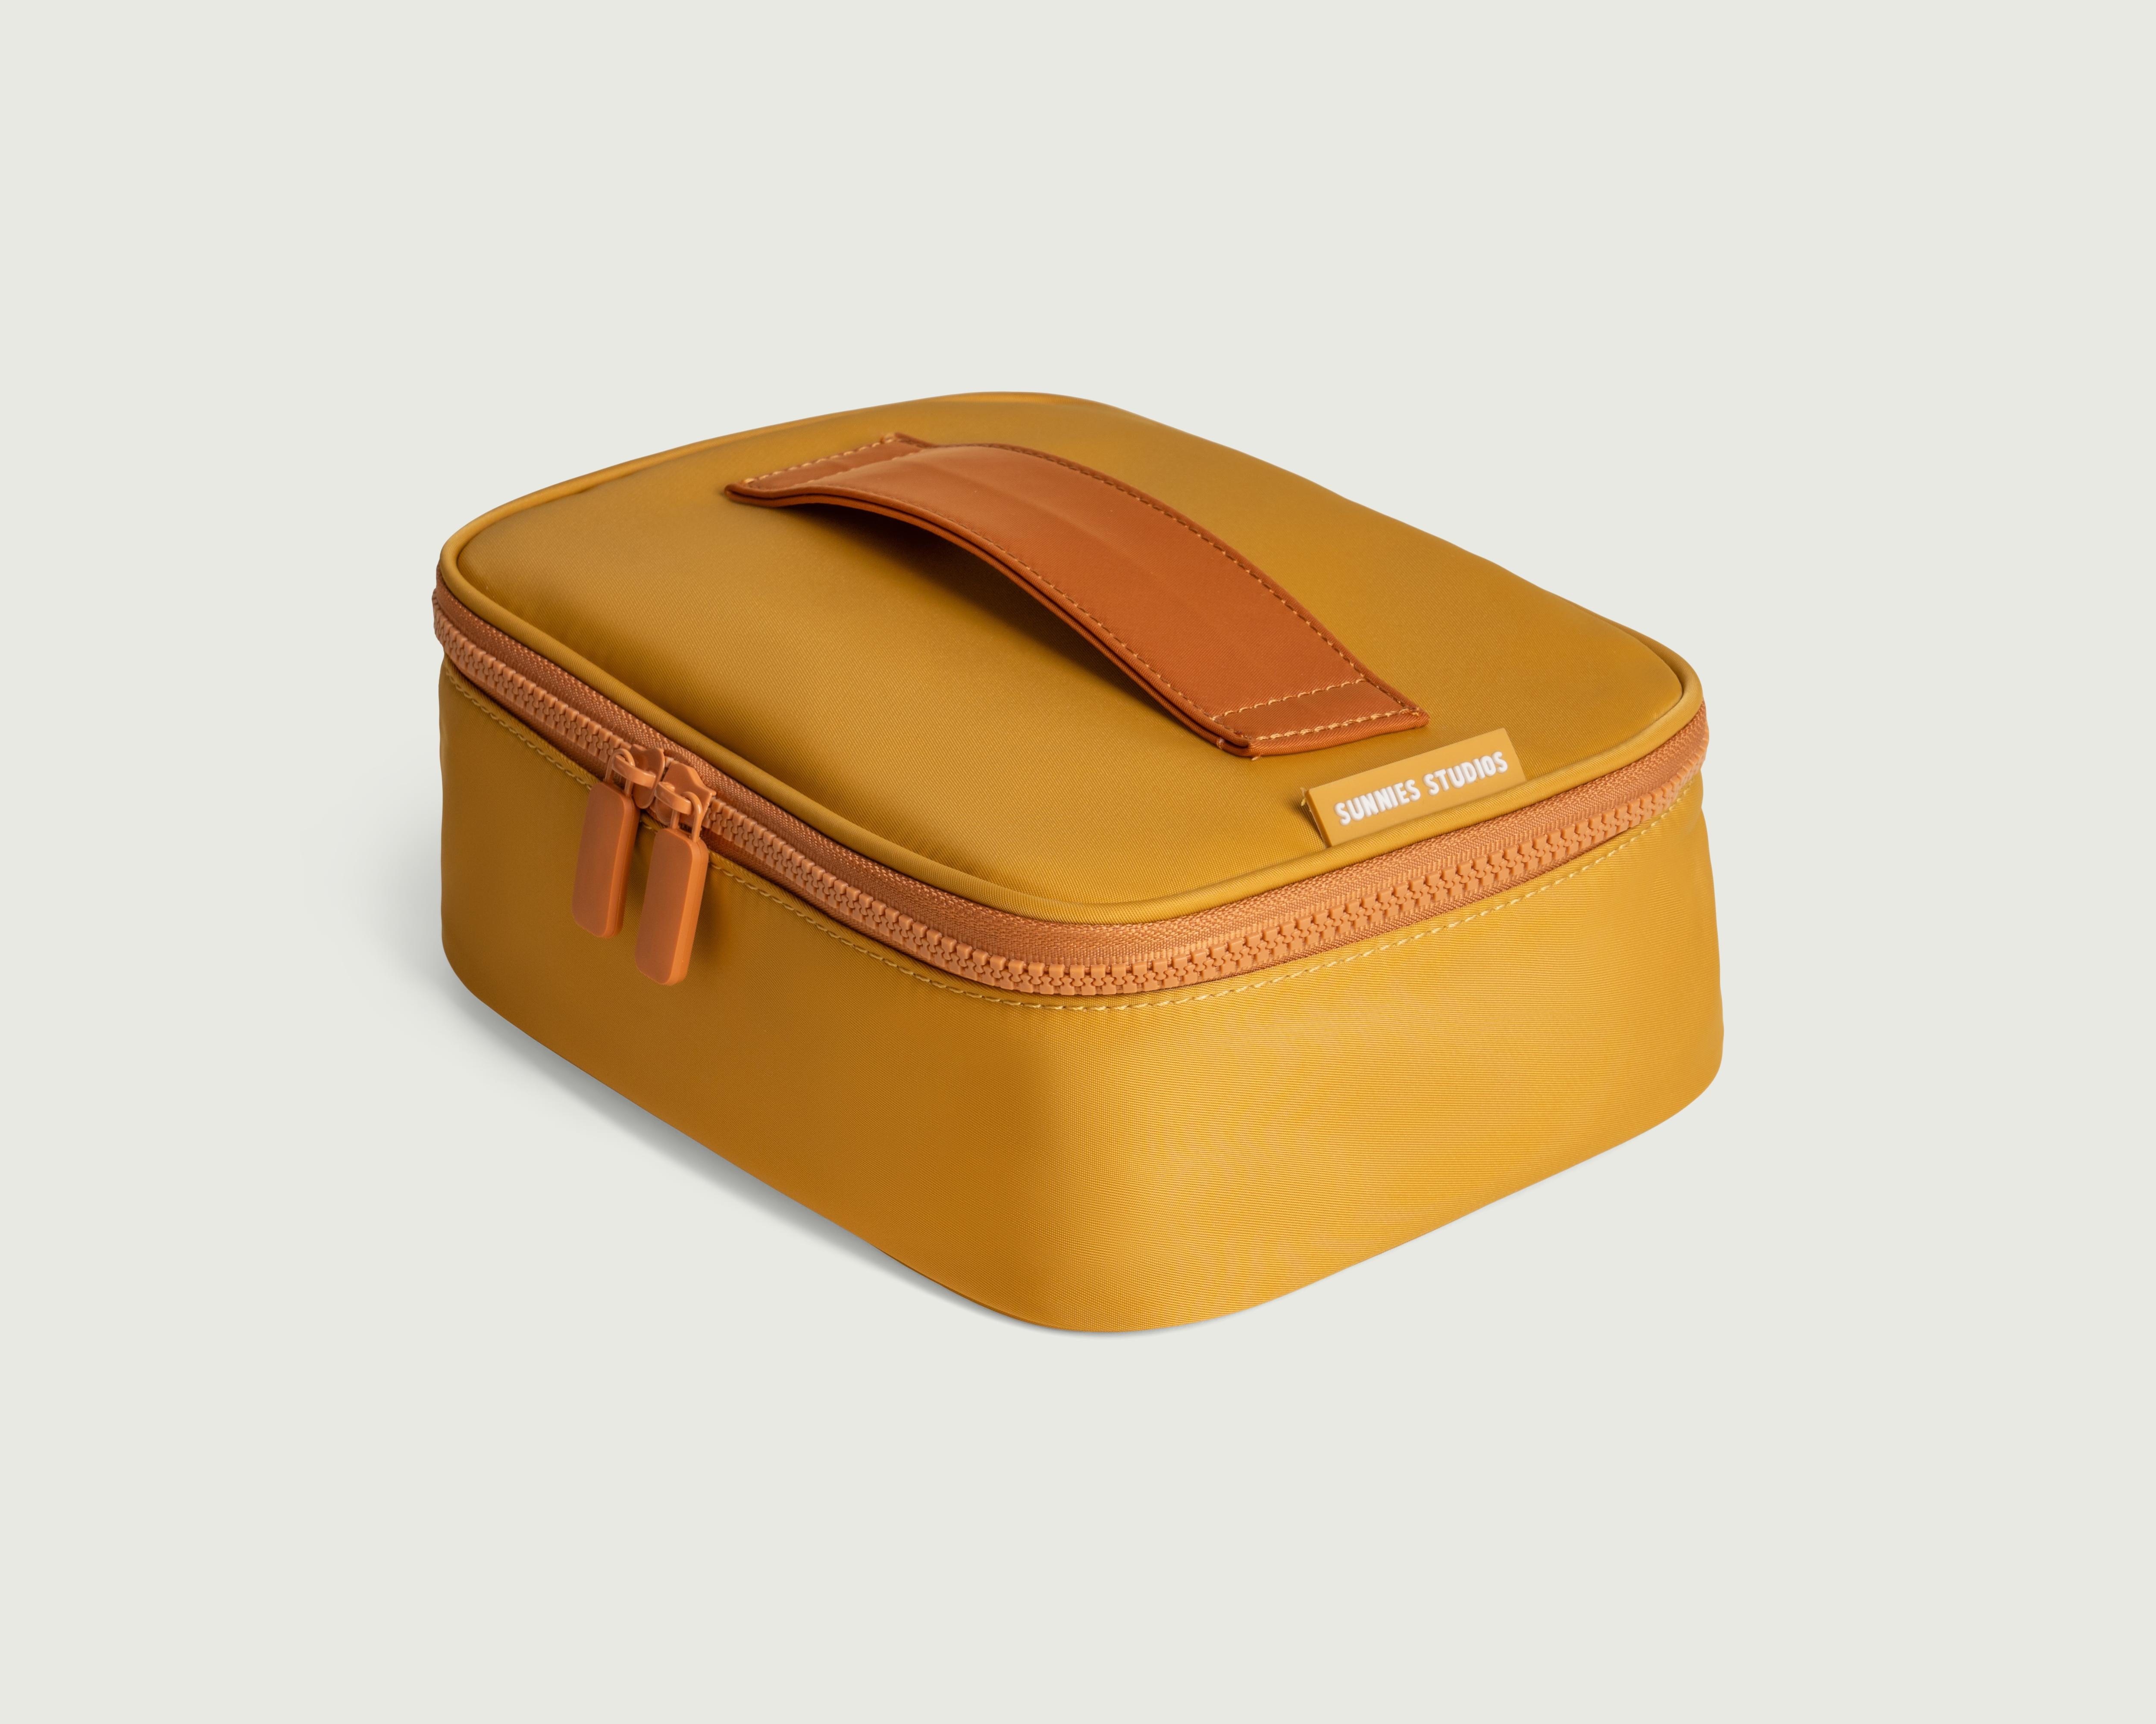 Creme-Caramel::Travel Kit Travel Kit brown  front diagonal